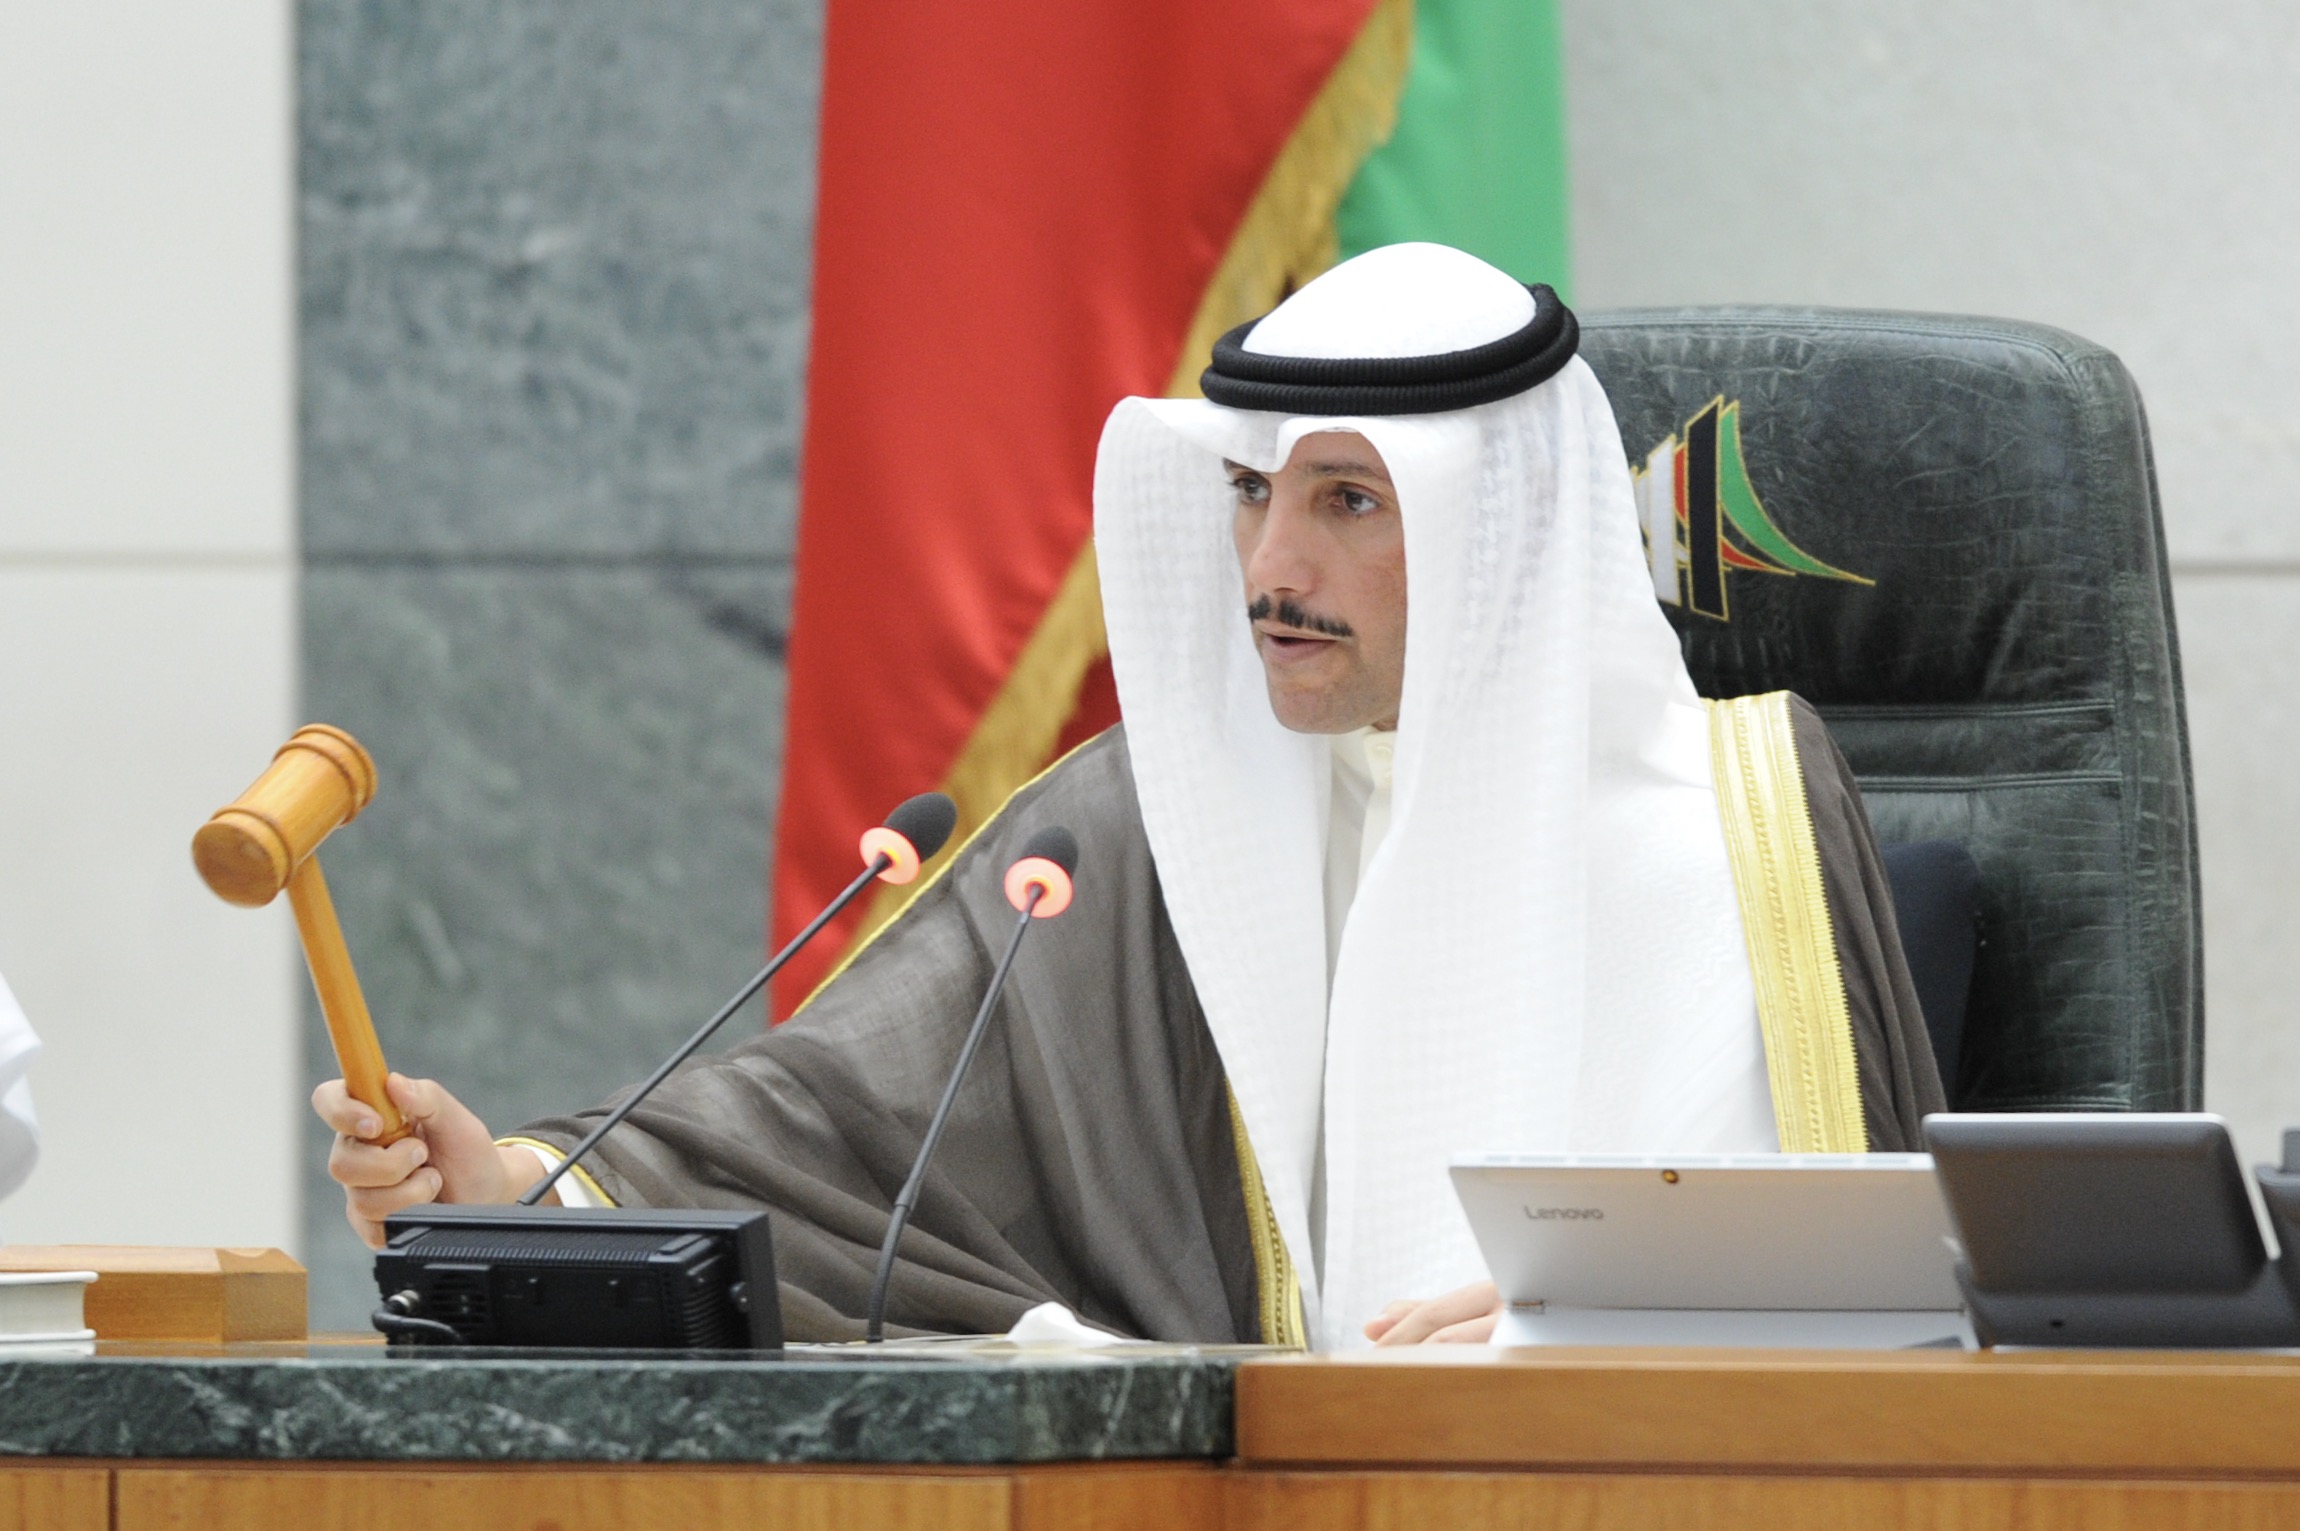 رئيس مجلس الامة الكويتي مرزوق علي الغانم